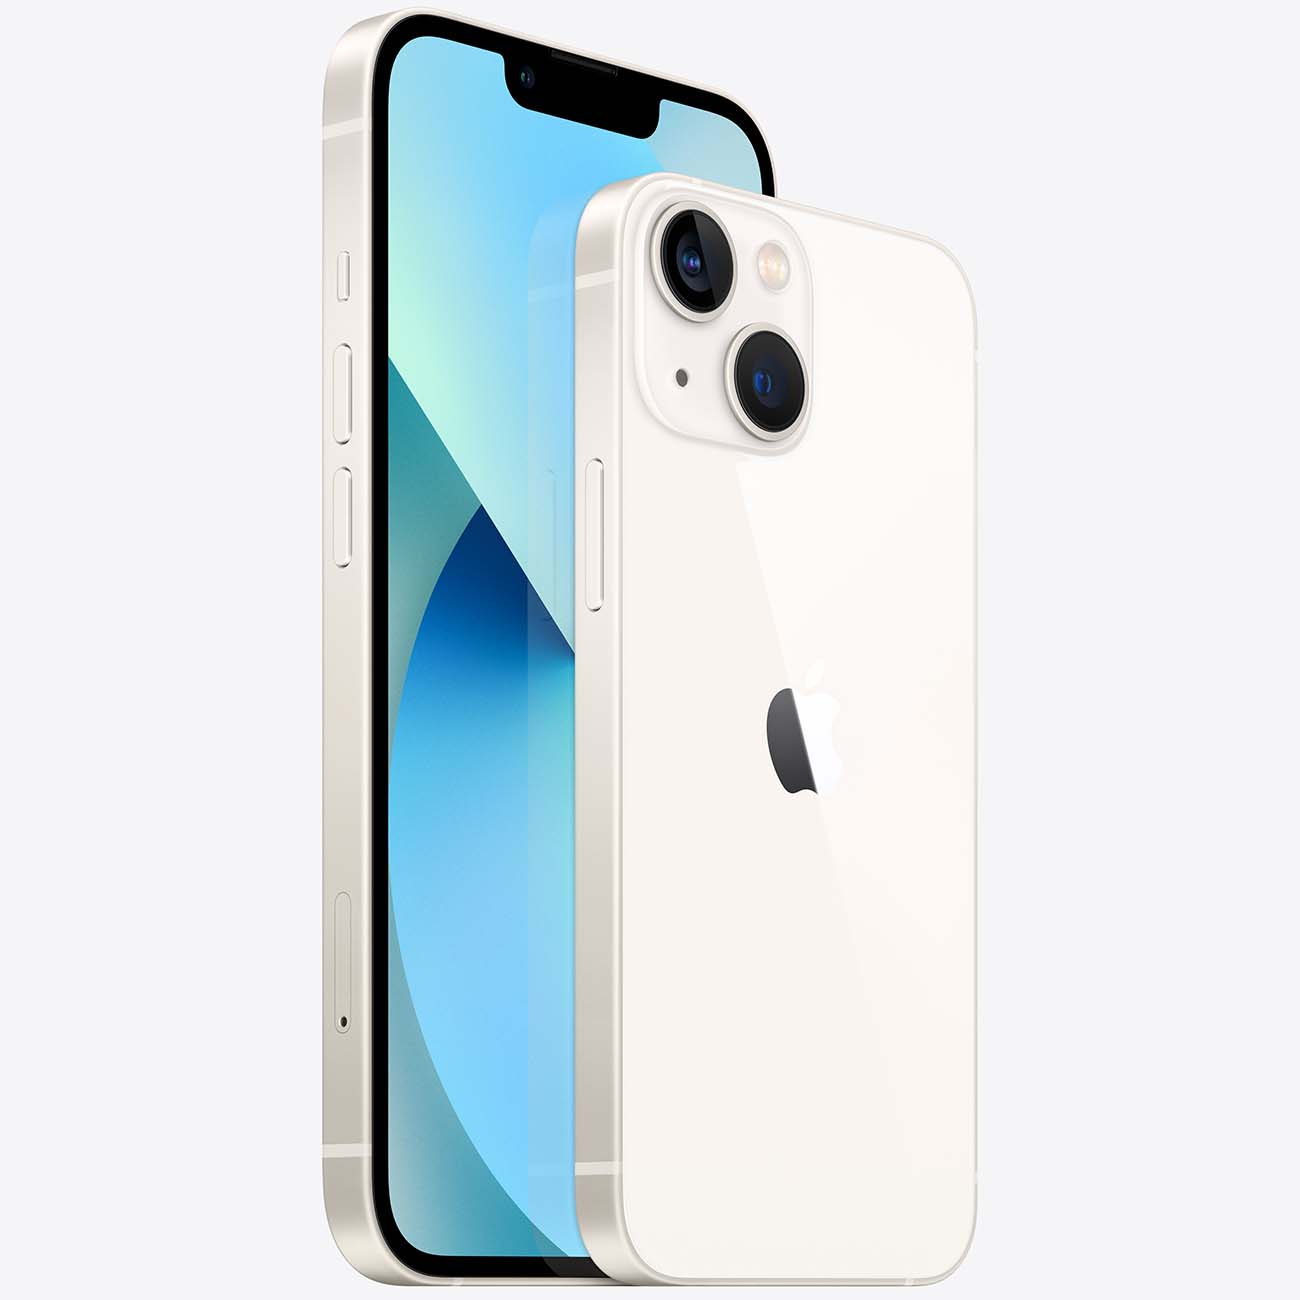 Купить смартфон apple iphone 13 mini 256gb starlight Apple iPhone 13 mini в официальном магазине Apple, Samsung, Xiaomi. iPixel.ru Купить, заказ, кредит, рассрочка, отзывы,  характеристики, цена,  фотографии, в подарок.